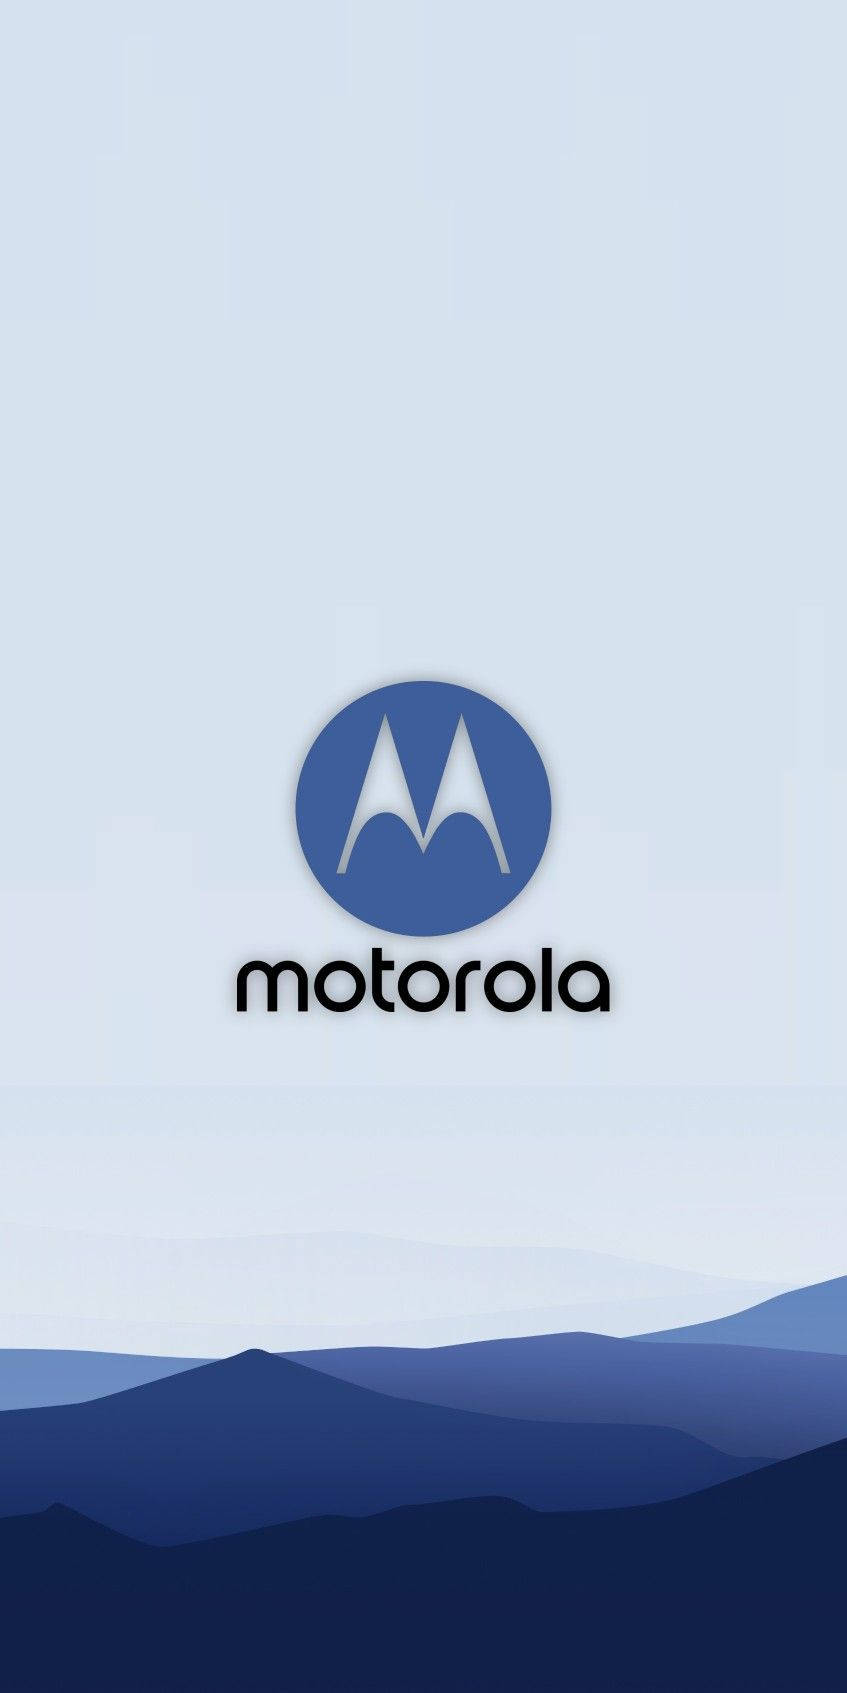 Motorola Vector Art